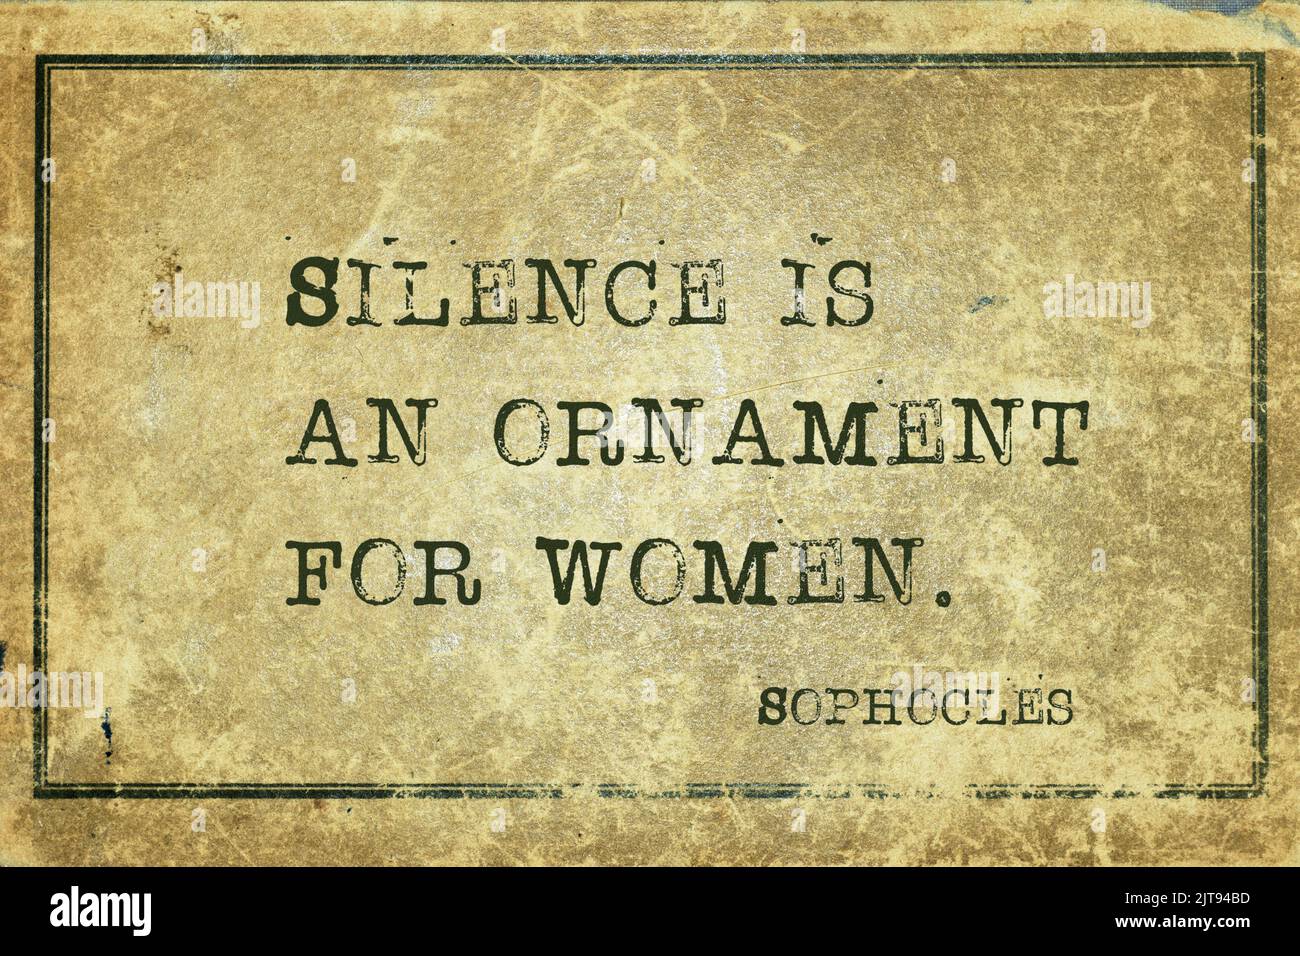 Il silenzio è un ornamento per le donne - l'antica citazione del filosofo greco Sophocles è stampata su un cartoncino vintage grunge Foto Stock